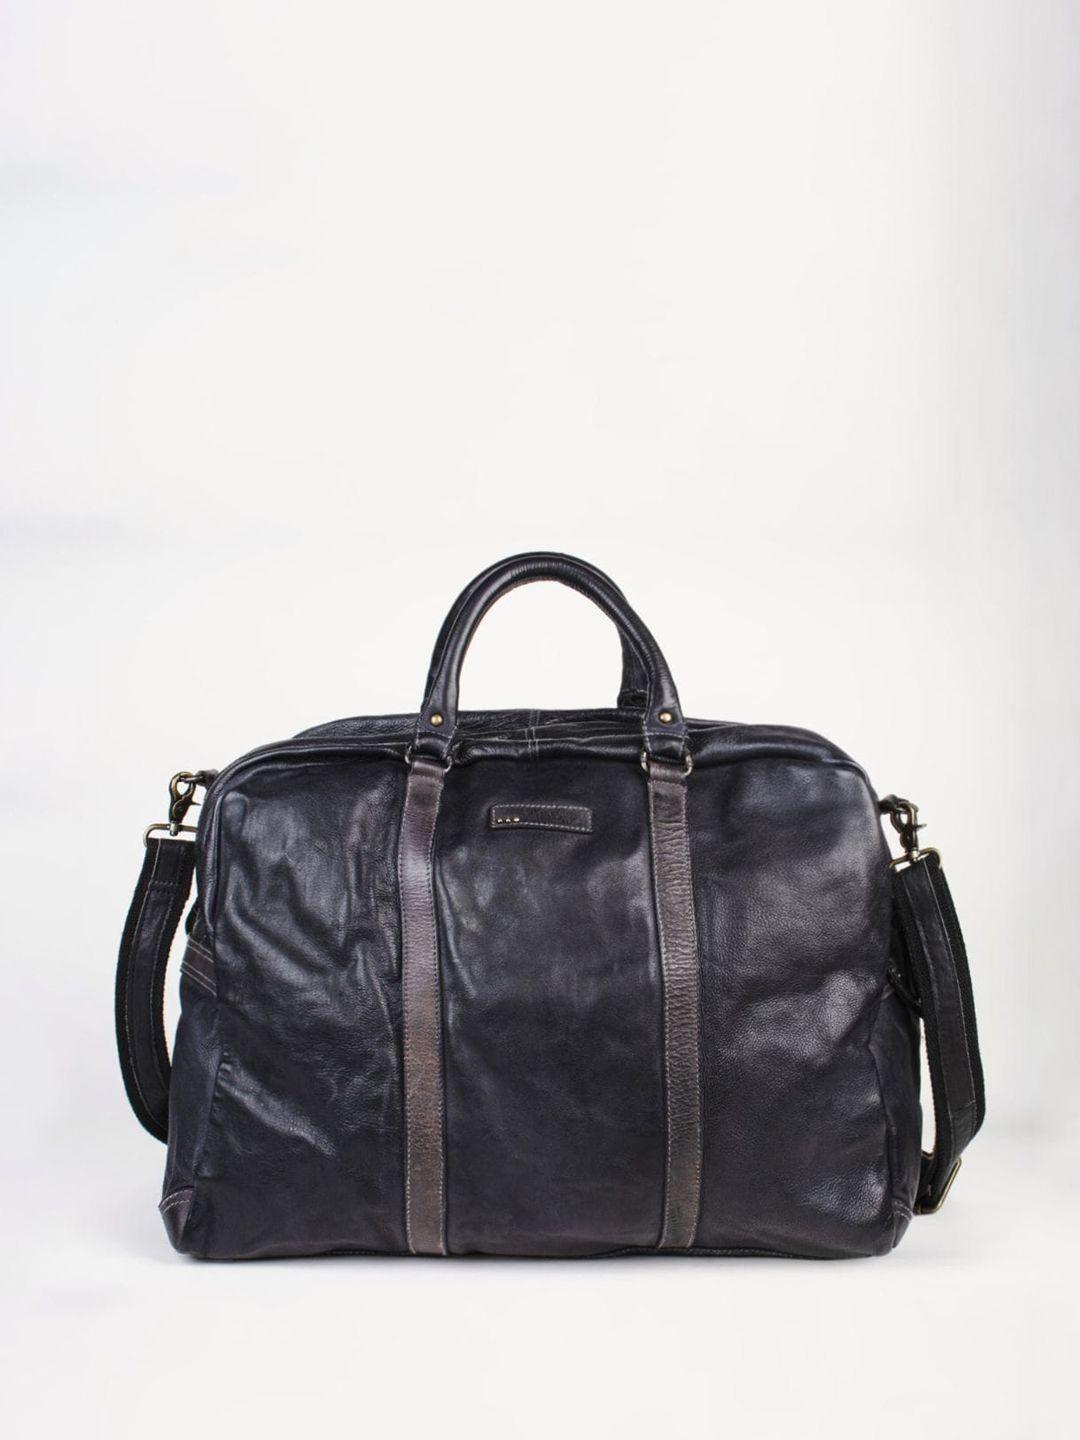 art n vintage unisex water-resistant large weekender leather duffel bag